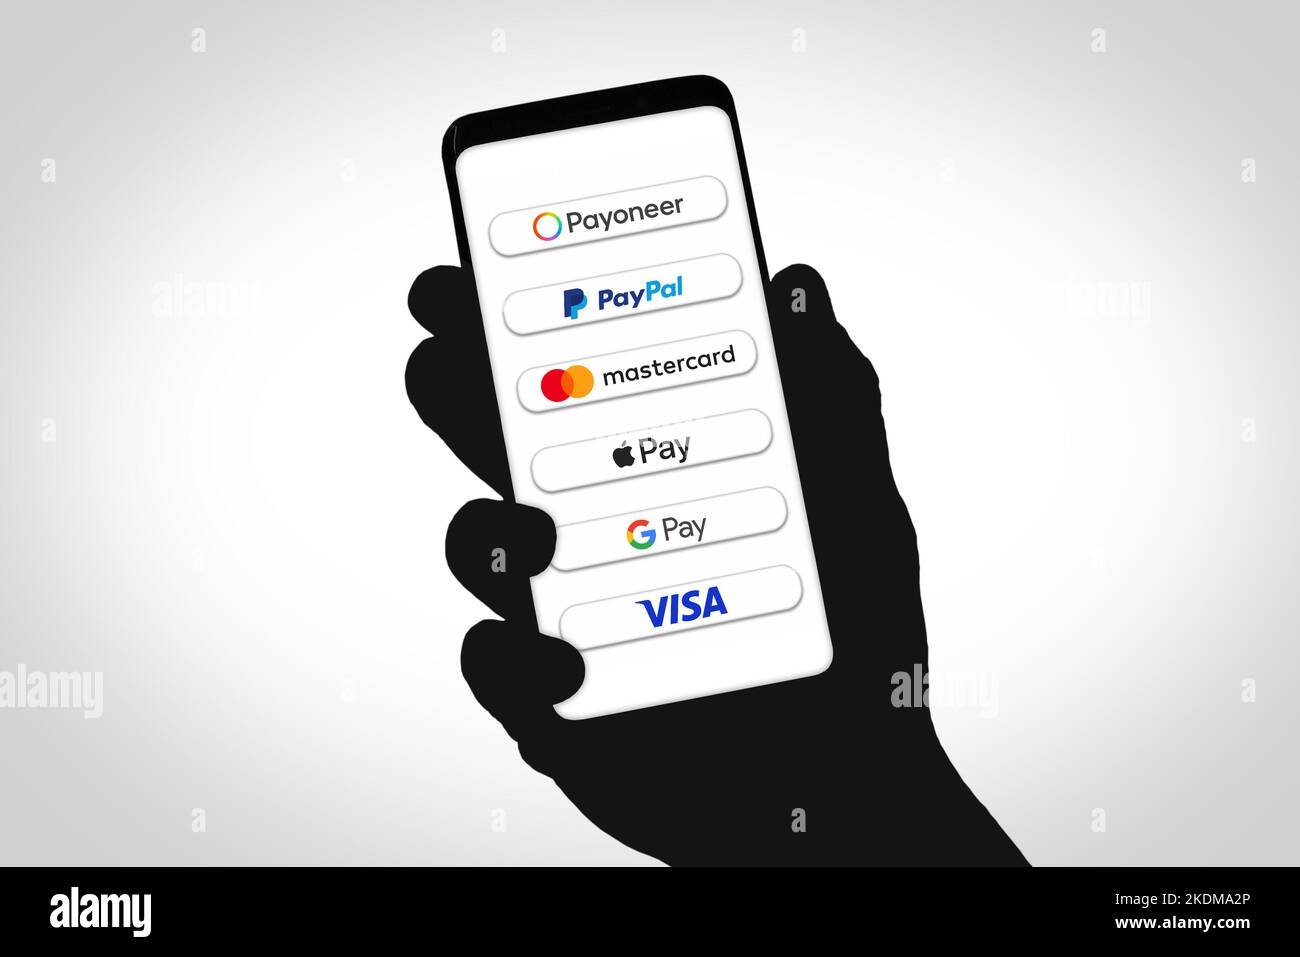 Sistema de pago en América a través de Payoneer, Paypal, Mastercard, Apple Pay, Google Pay y Visa Foto de stock